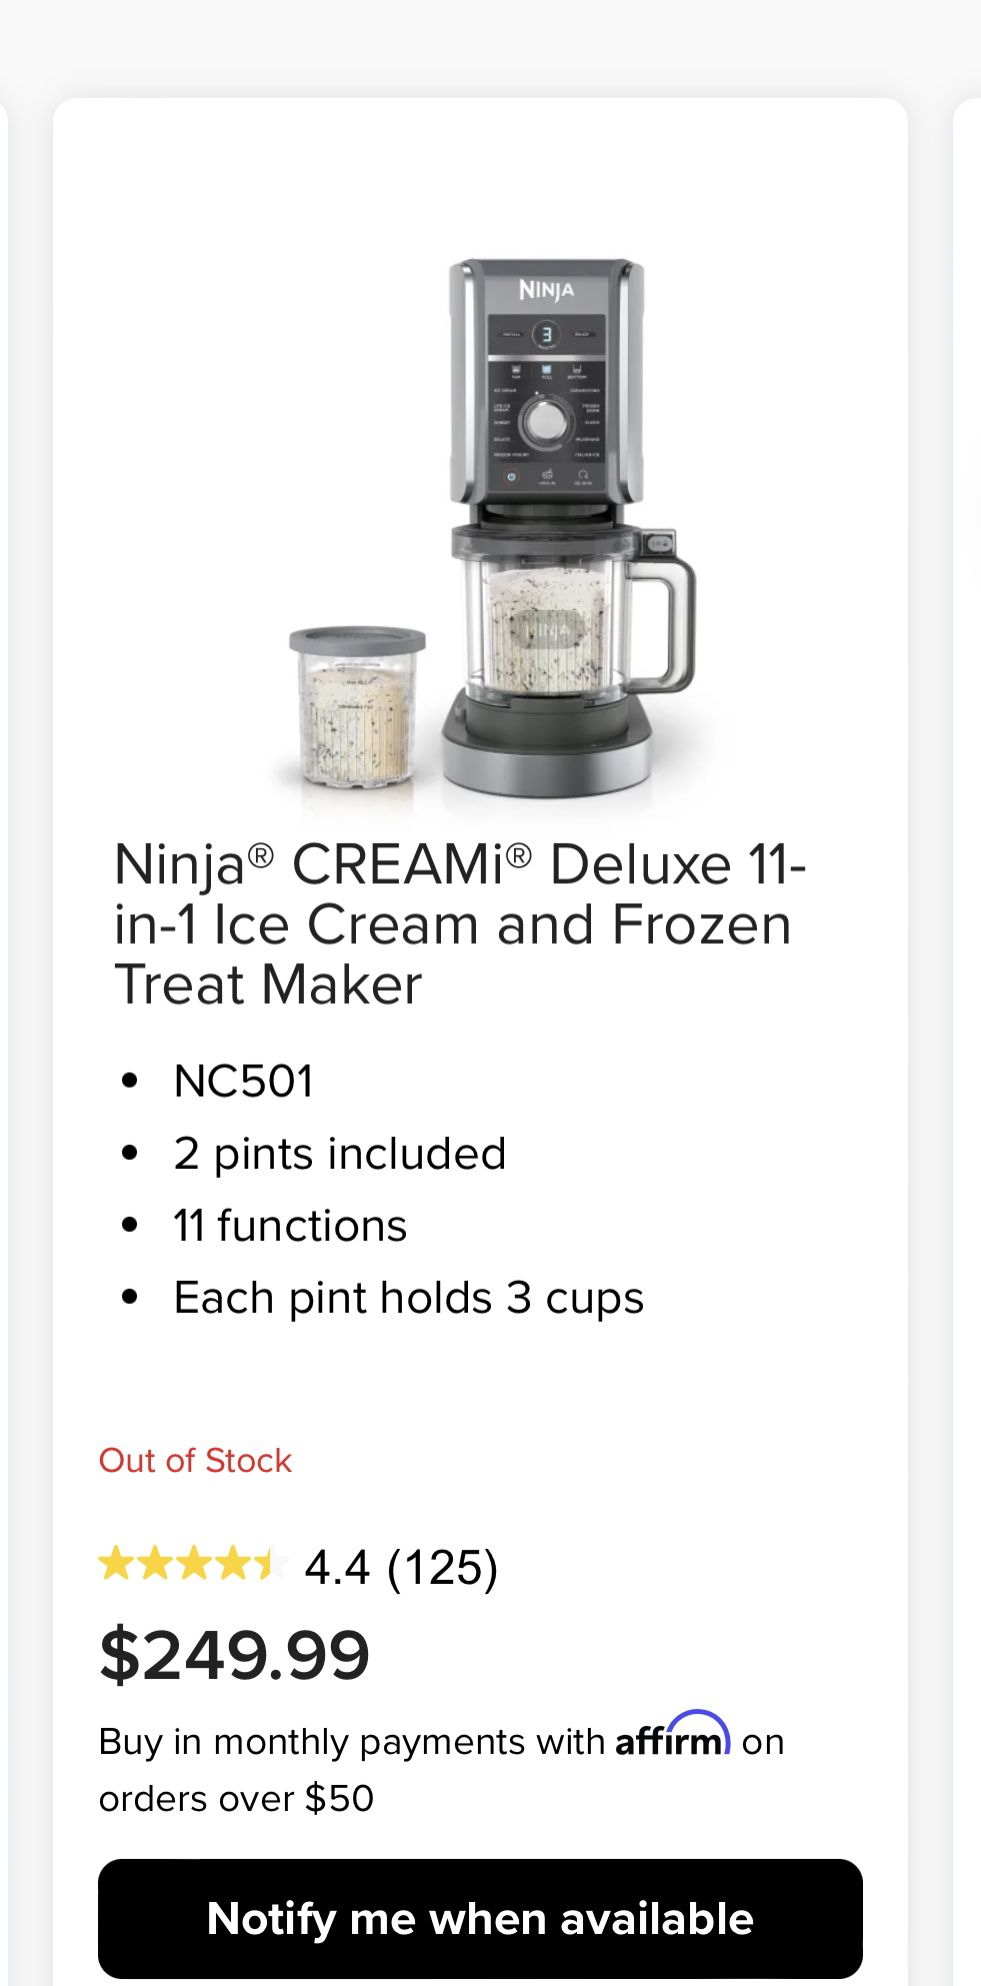 Ninja CREAMi Deluxe 11-in-1 Frozen Treat Maker w/ Extra Pints 